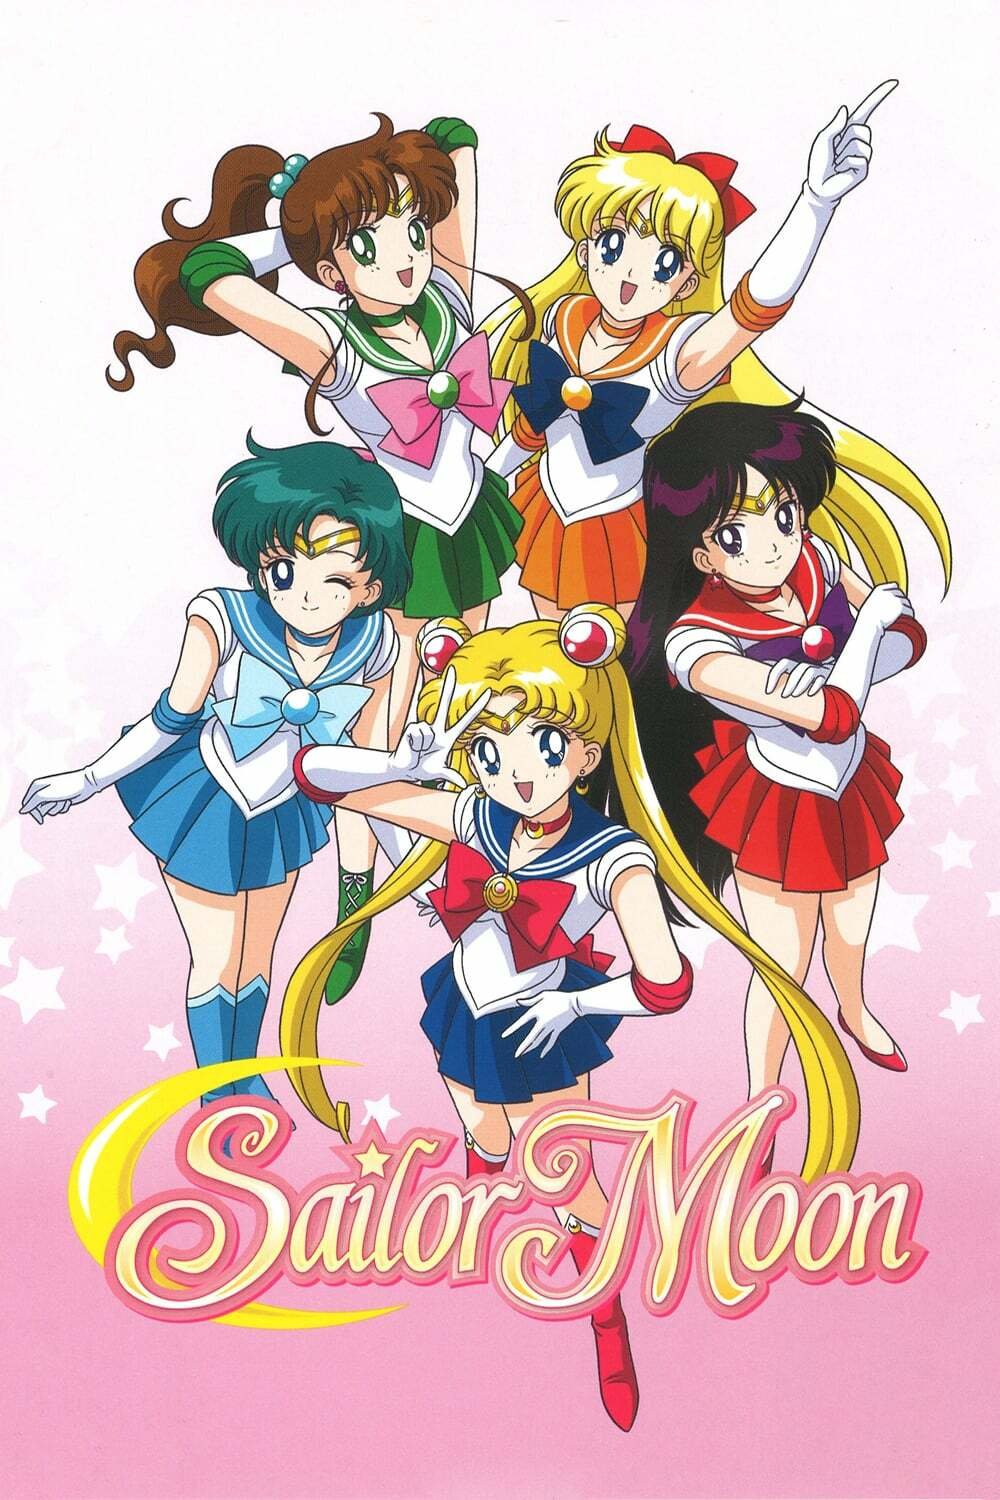 Un'immagine delle combattenti nell'anime storico di Sailor Moon